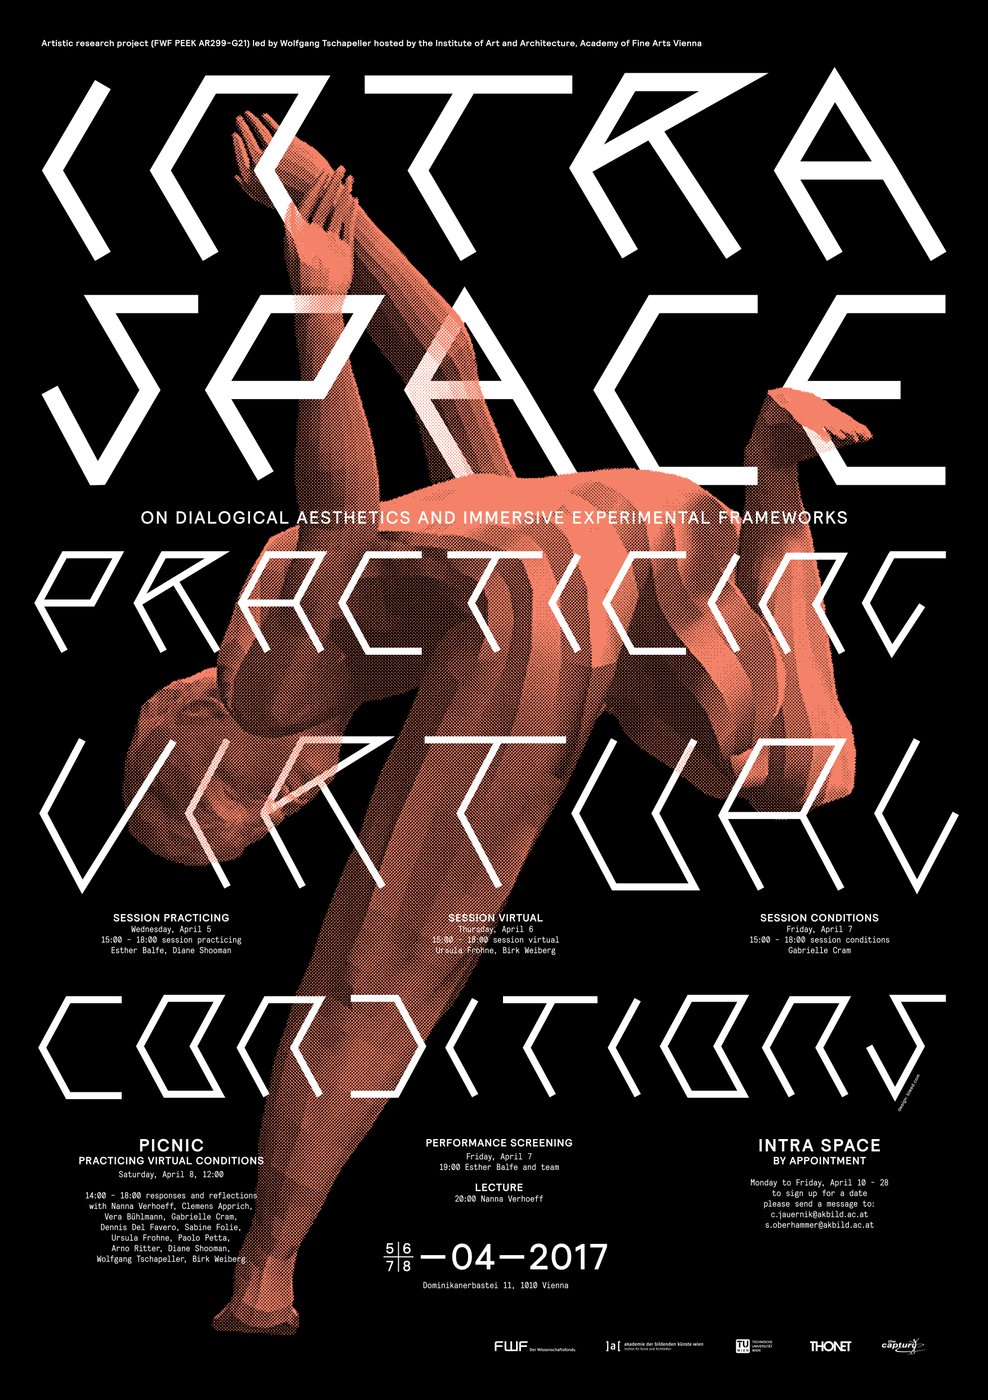 INTRA SPACE
 
  practicing virtual conditions
 
 lädt zu einem viertägigen Parcours zum Ende des künstlerischen Forschungsprojekts
 
  INTRA SPACE: the reformulation of architectural space as a dialogical aesthetic
 
 .